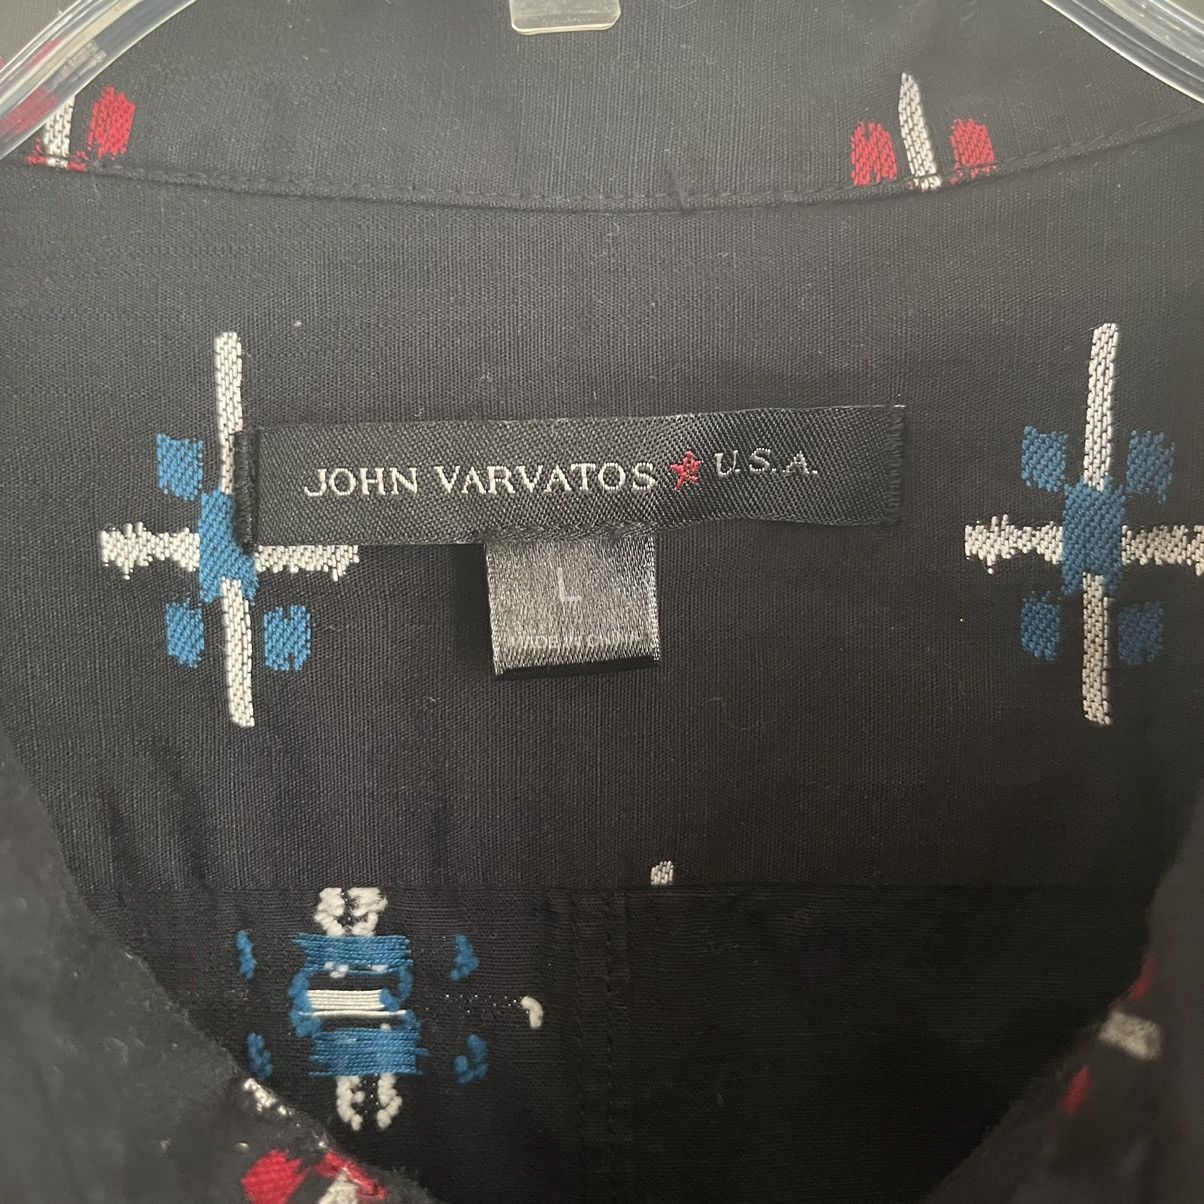 John Varvatos John Varvatos Embroidered Button Down Long Sleeve Shirt Size US L / EU 52-54 / 3 - 4 Thumbnail